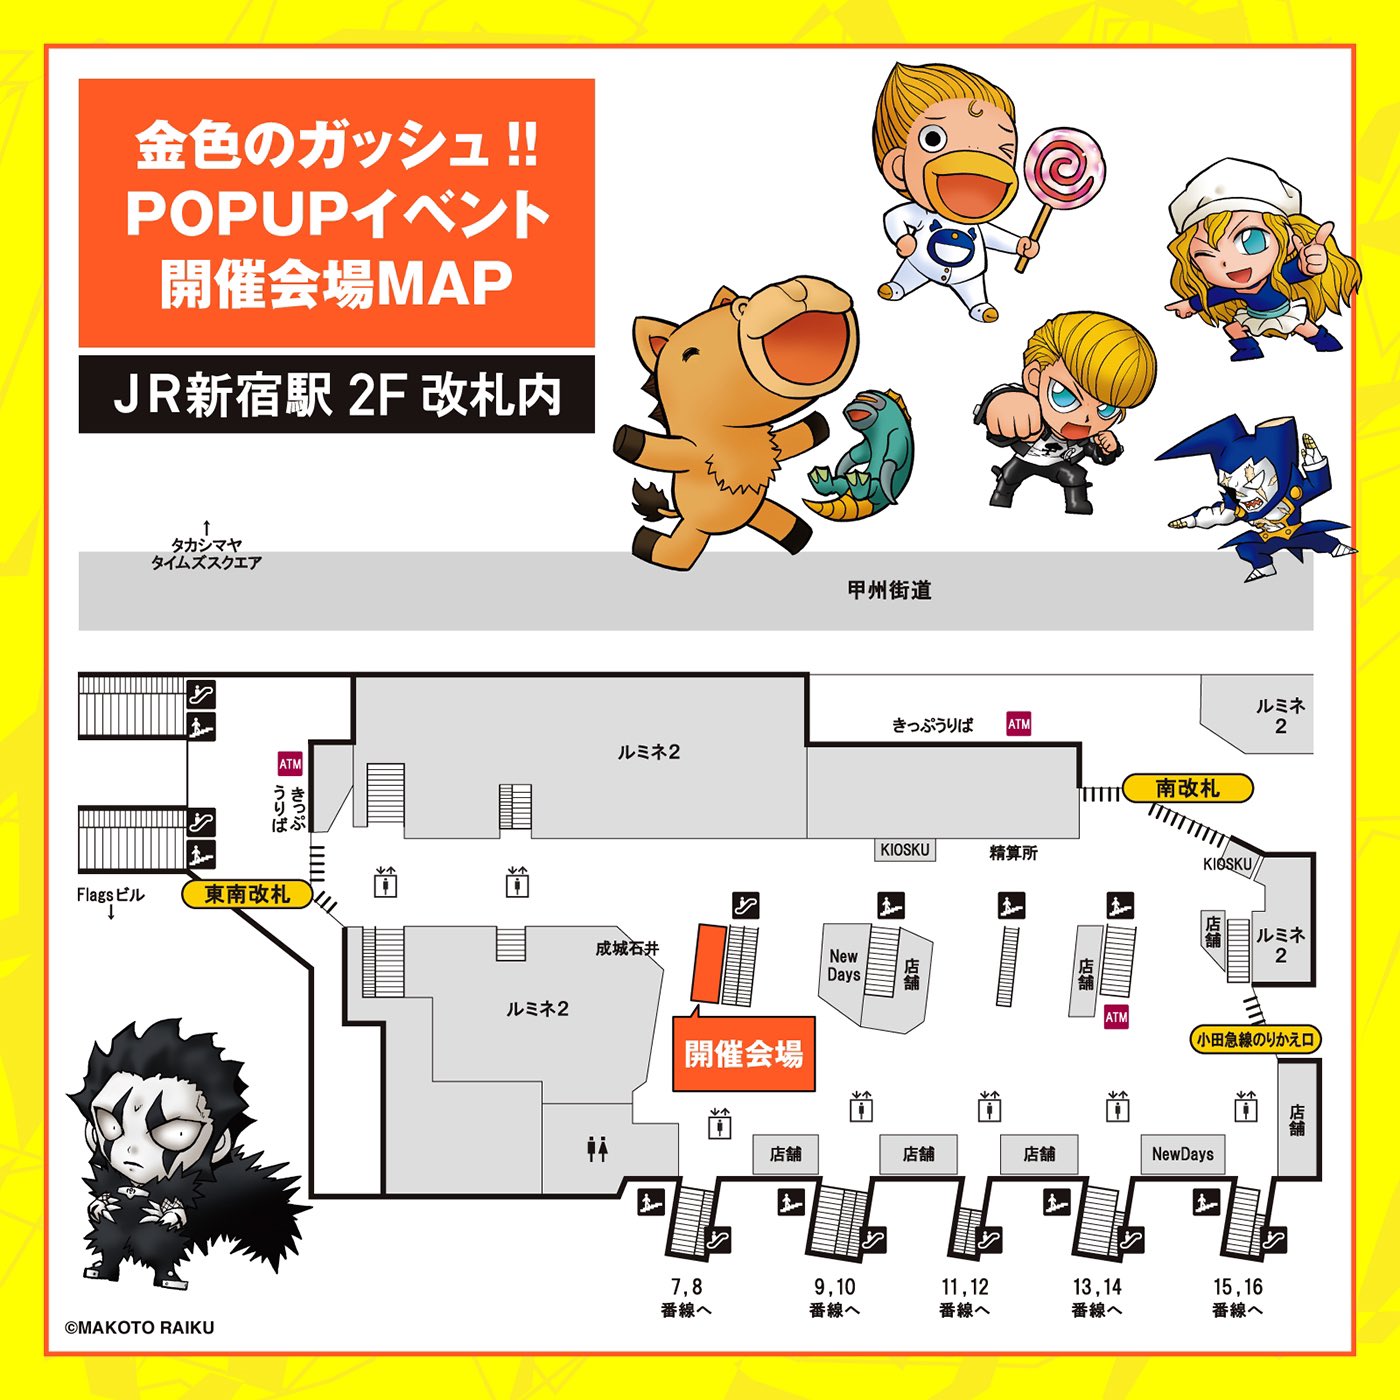 金色のガッシュ!! 新グッズ多数の限定ストア in JR新宿駅 5月8日より開催!